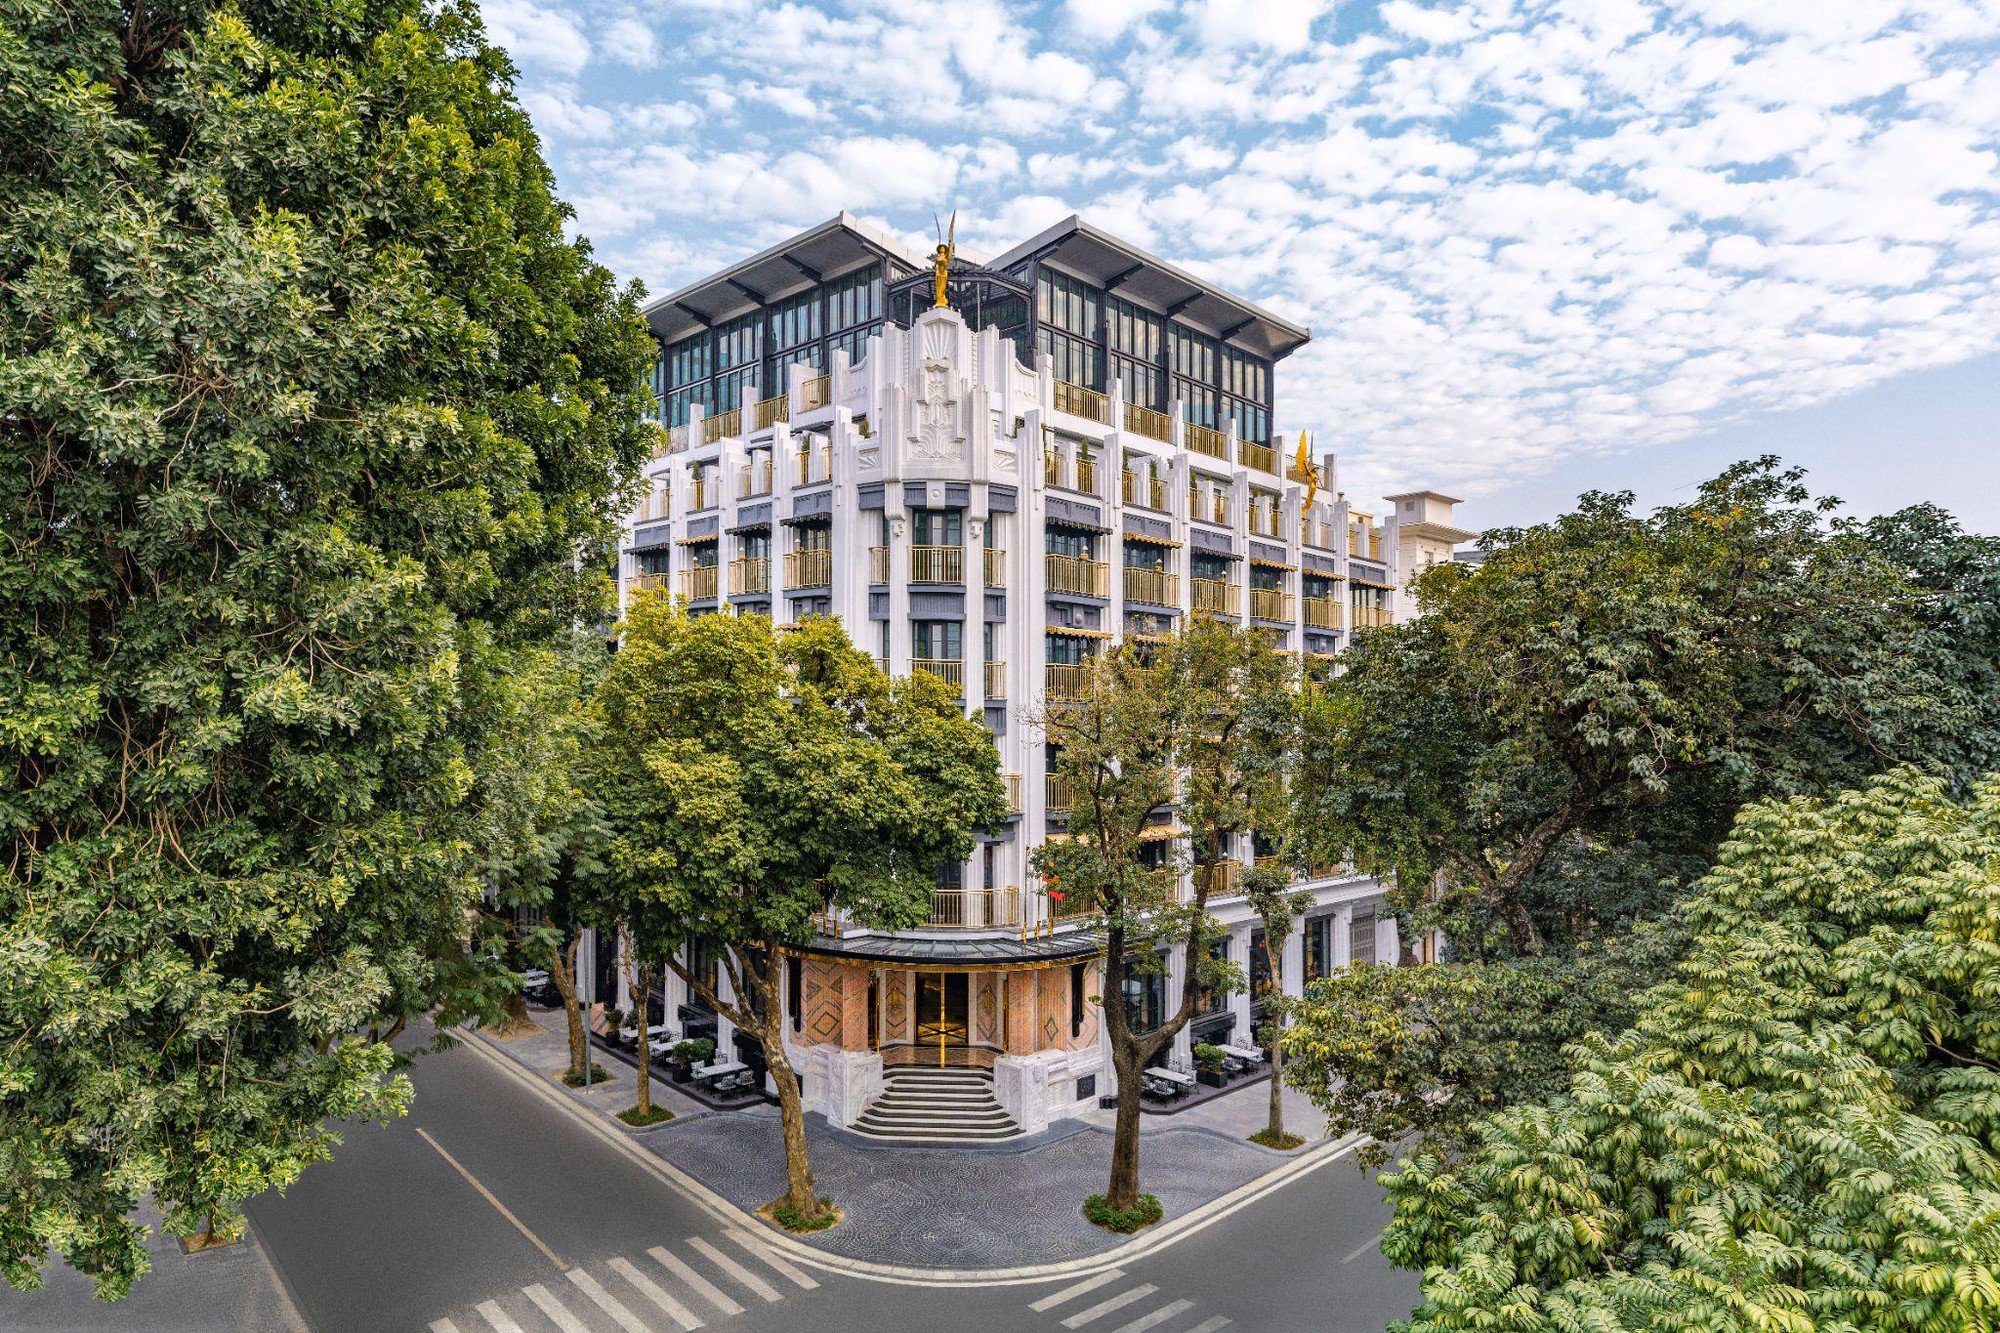 DestinAsian vinh danh Capella Hanoi của Sun Group là khách sạn trong thành phố tốt nhất Việt Nam- Ảnh 1.